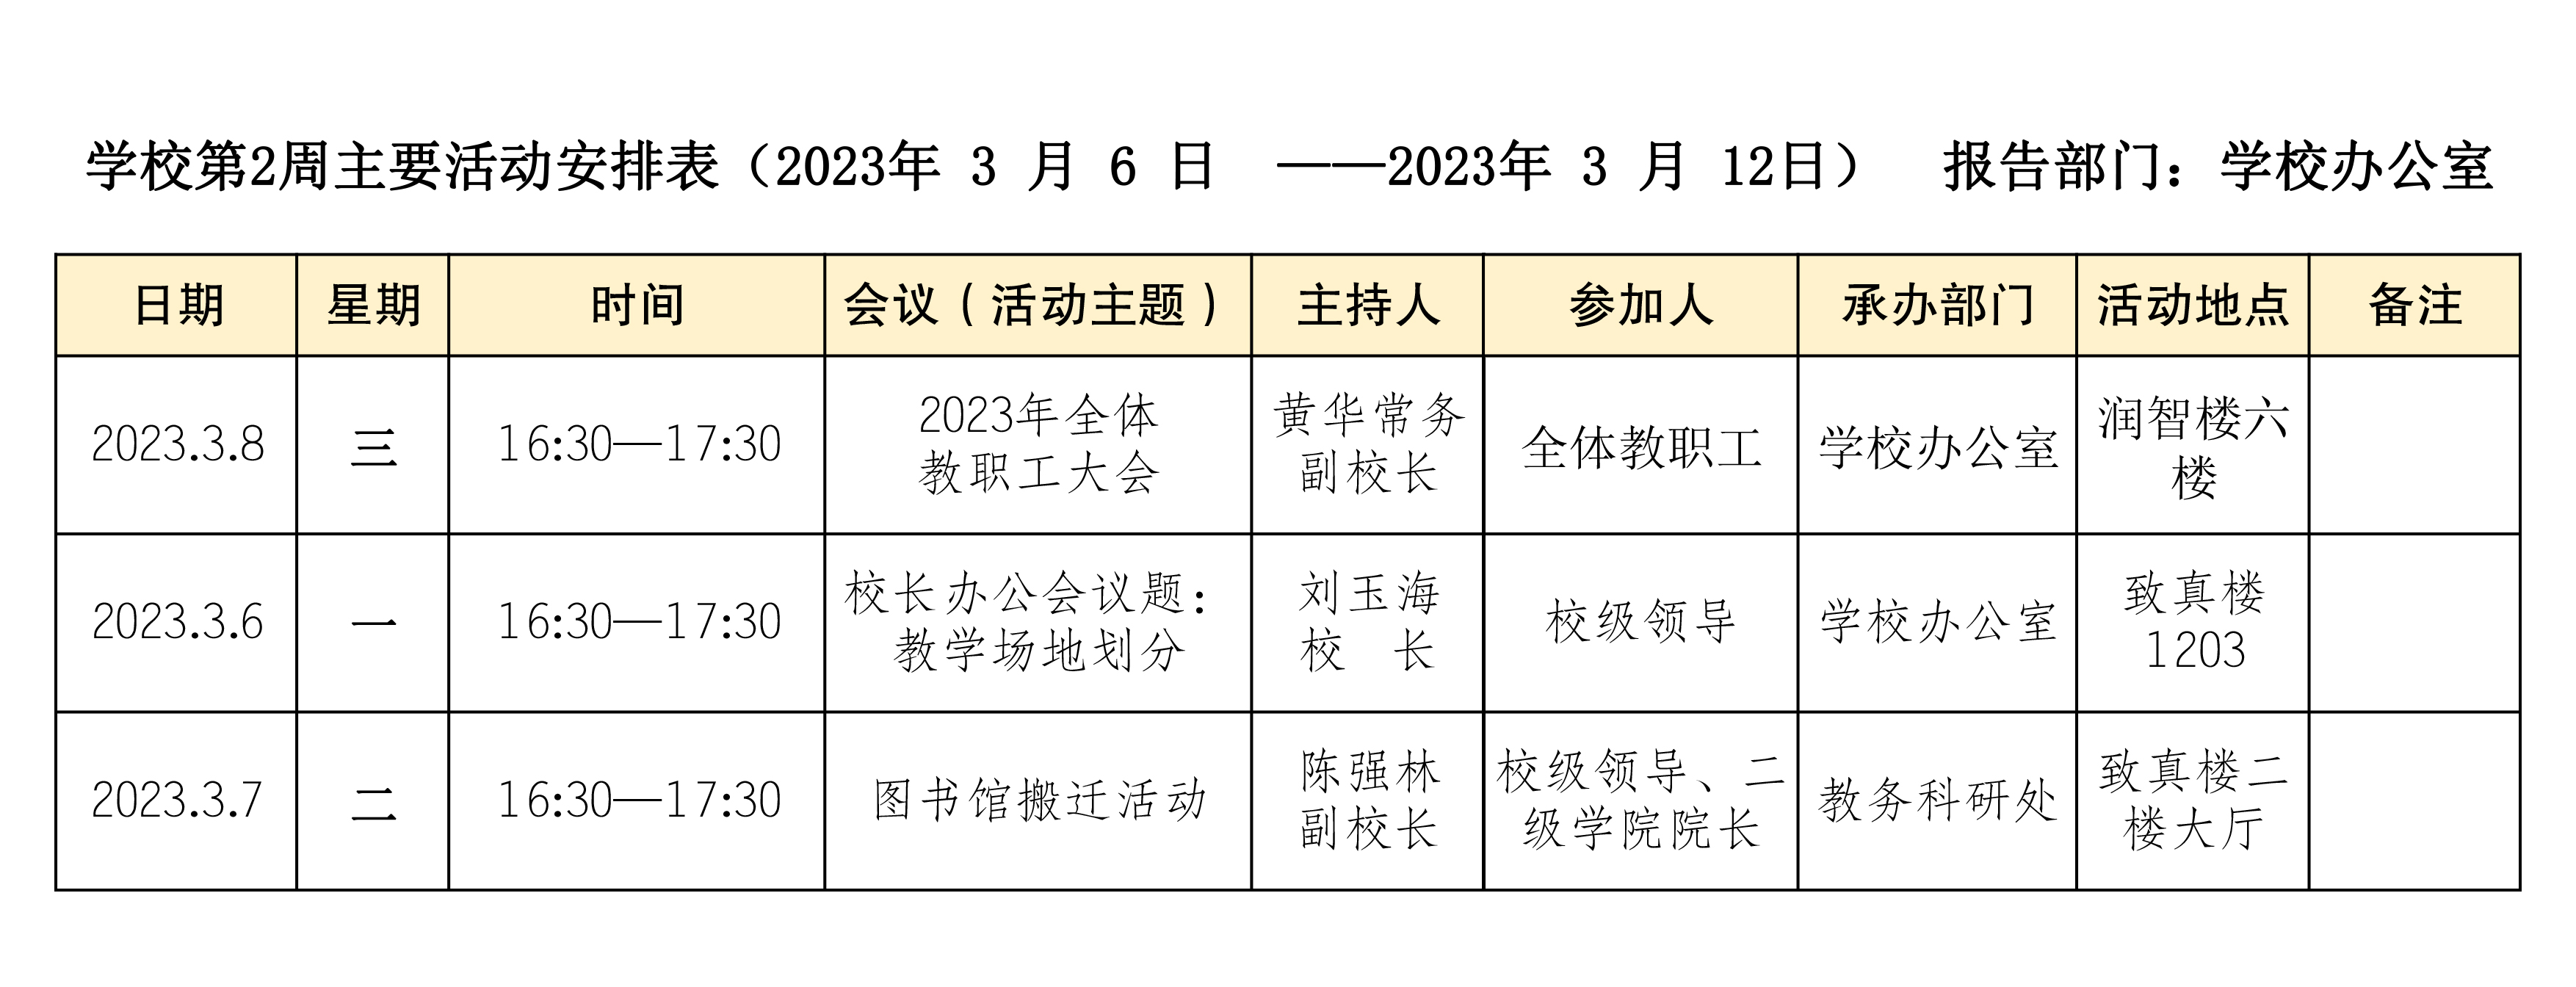 第2周主要活動安排表（2023年 3 月 6 日  ——2023年 3 月 12日）  報告部門：學校辦公室